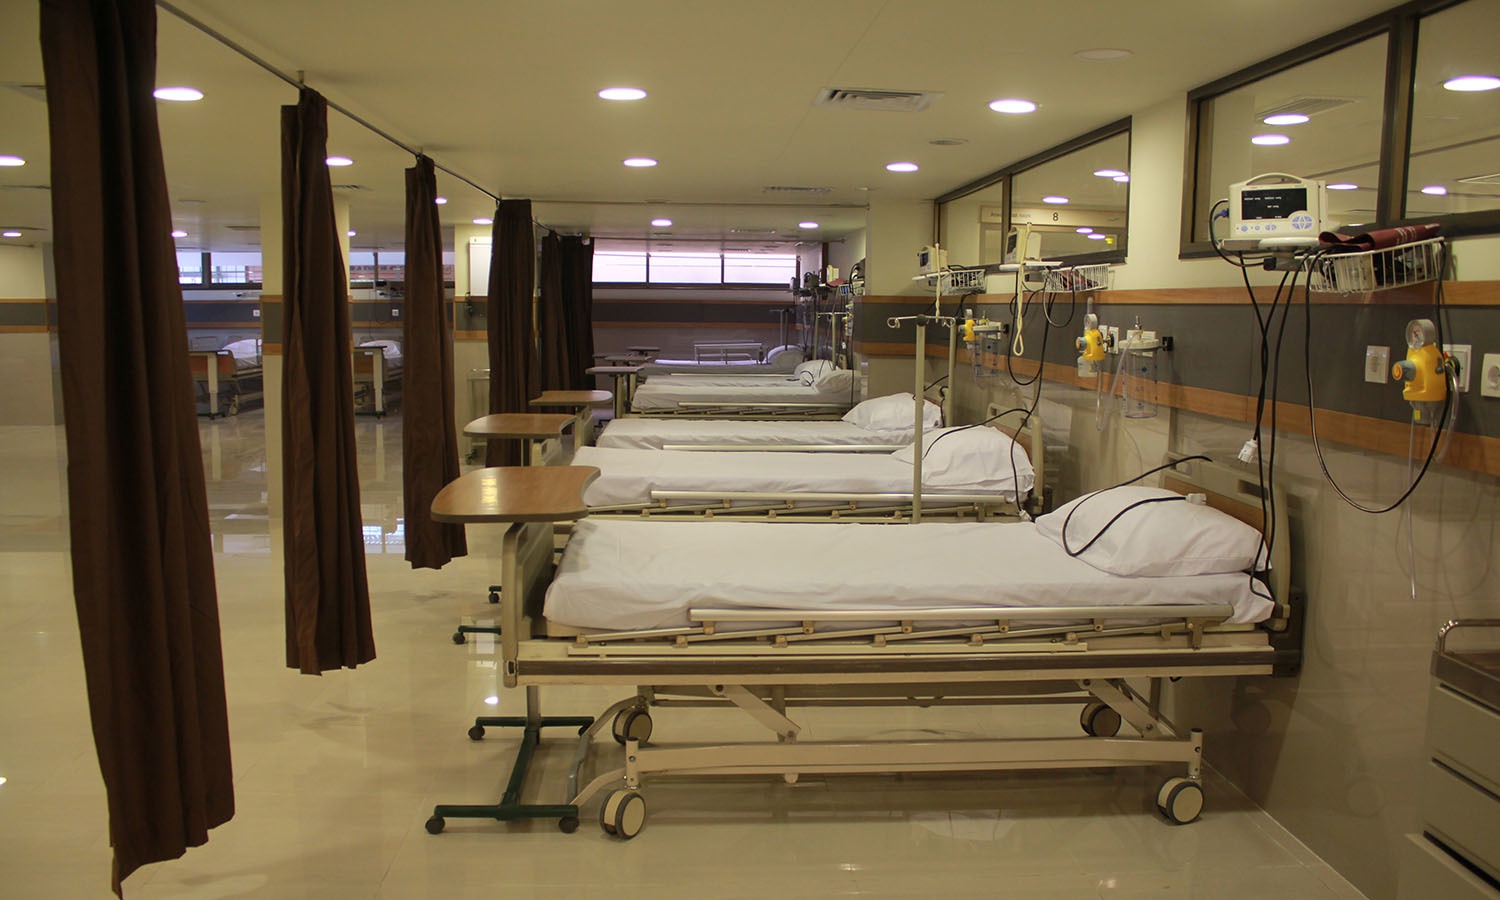 قضية مؤلمة.. تعذيب وانتهاكات فظيعة بمستشفى في باكستان 